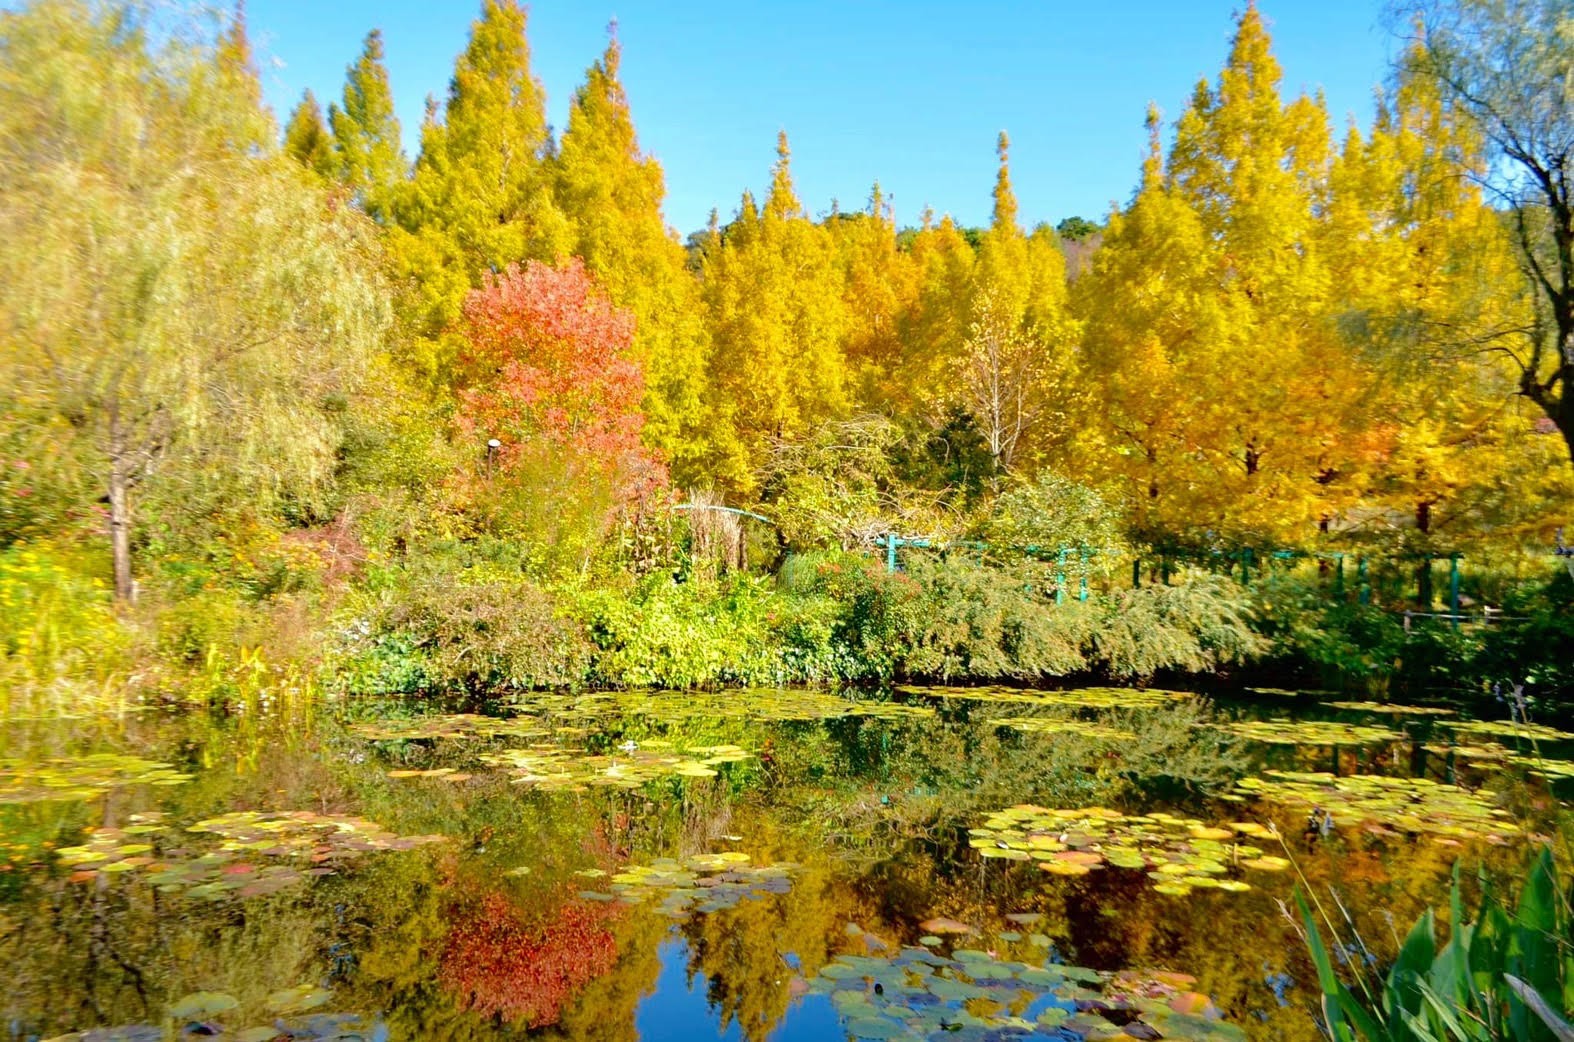 北川村莫內庭園馬摩丹是全球唯一獲得法國吉維尼認可的海外莫內花園。